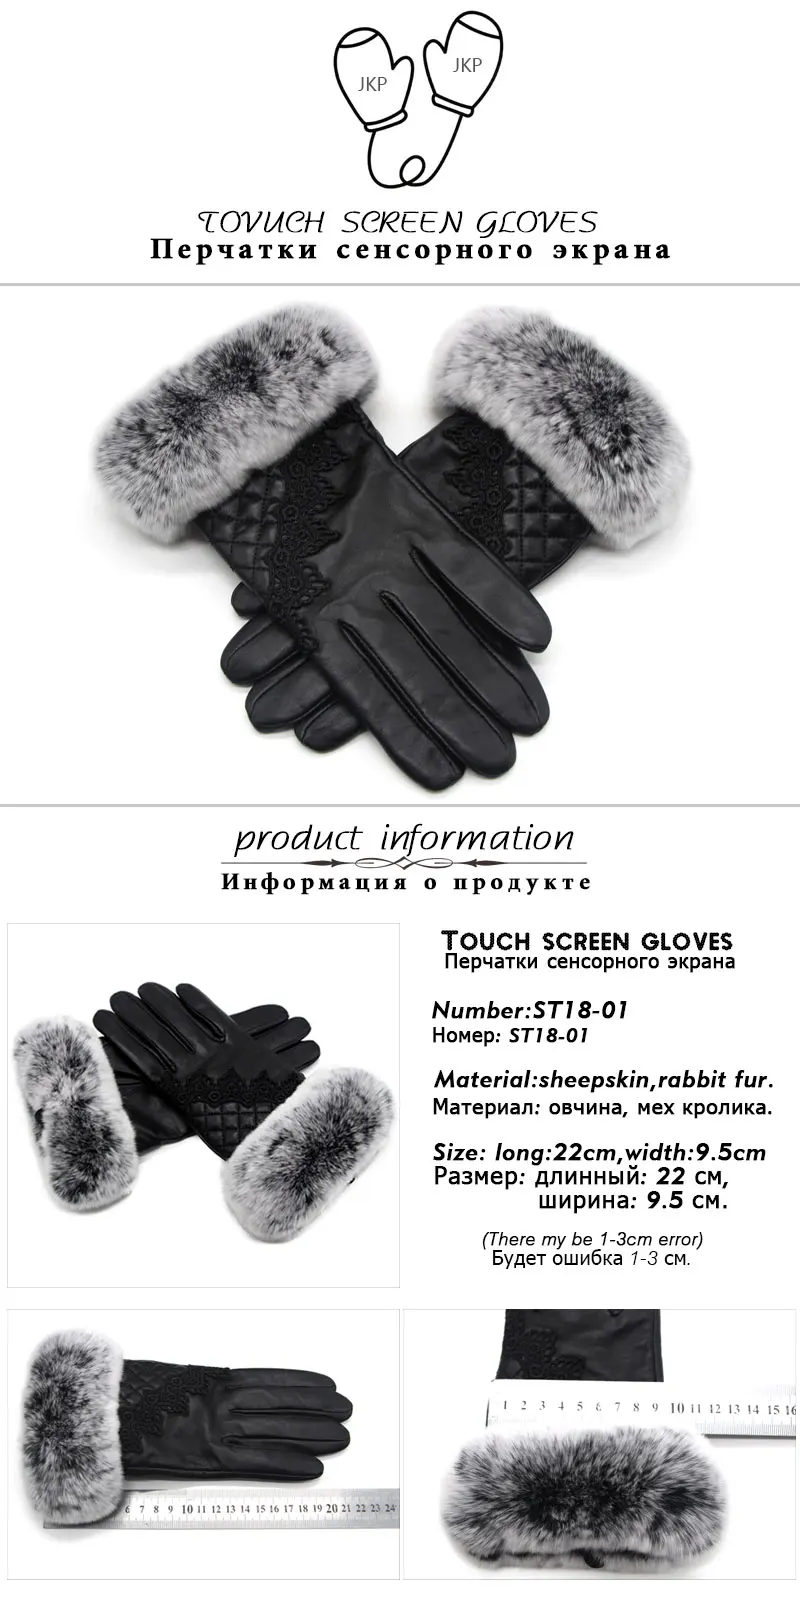 2018 новые женские перчатки наручные шерстяной подкладкой Модные кожаные перчатки овчины женские модели вождения мех кролика теплые